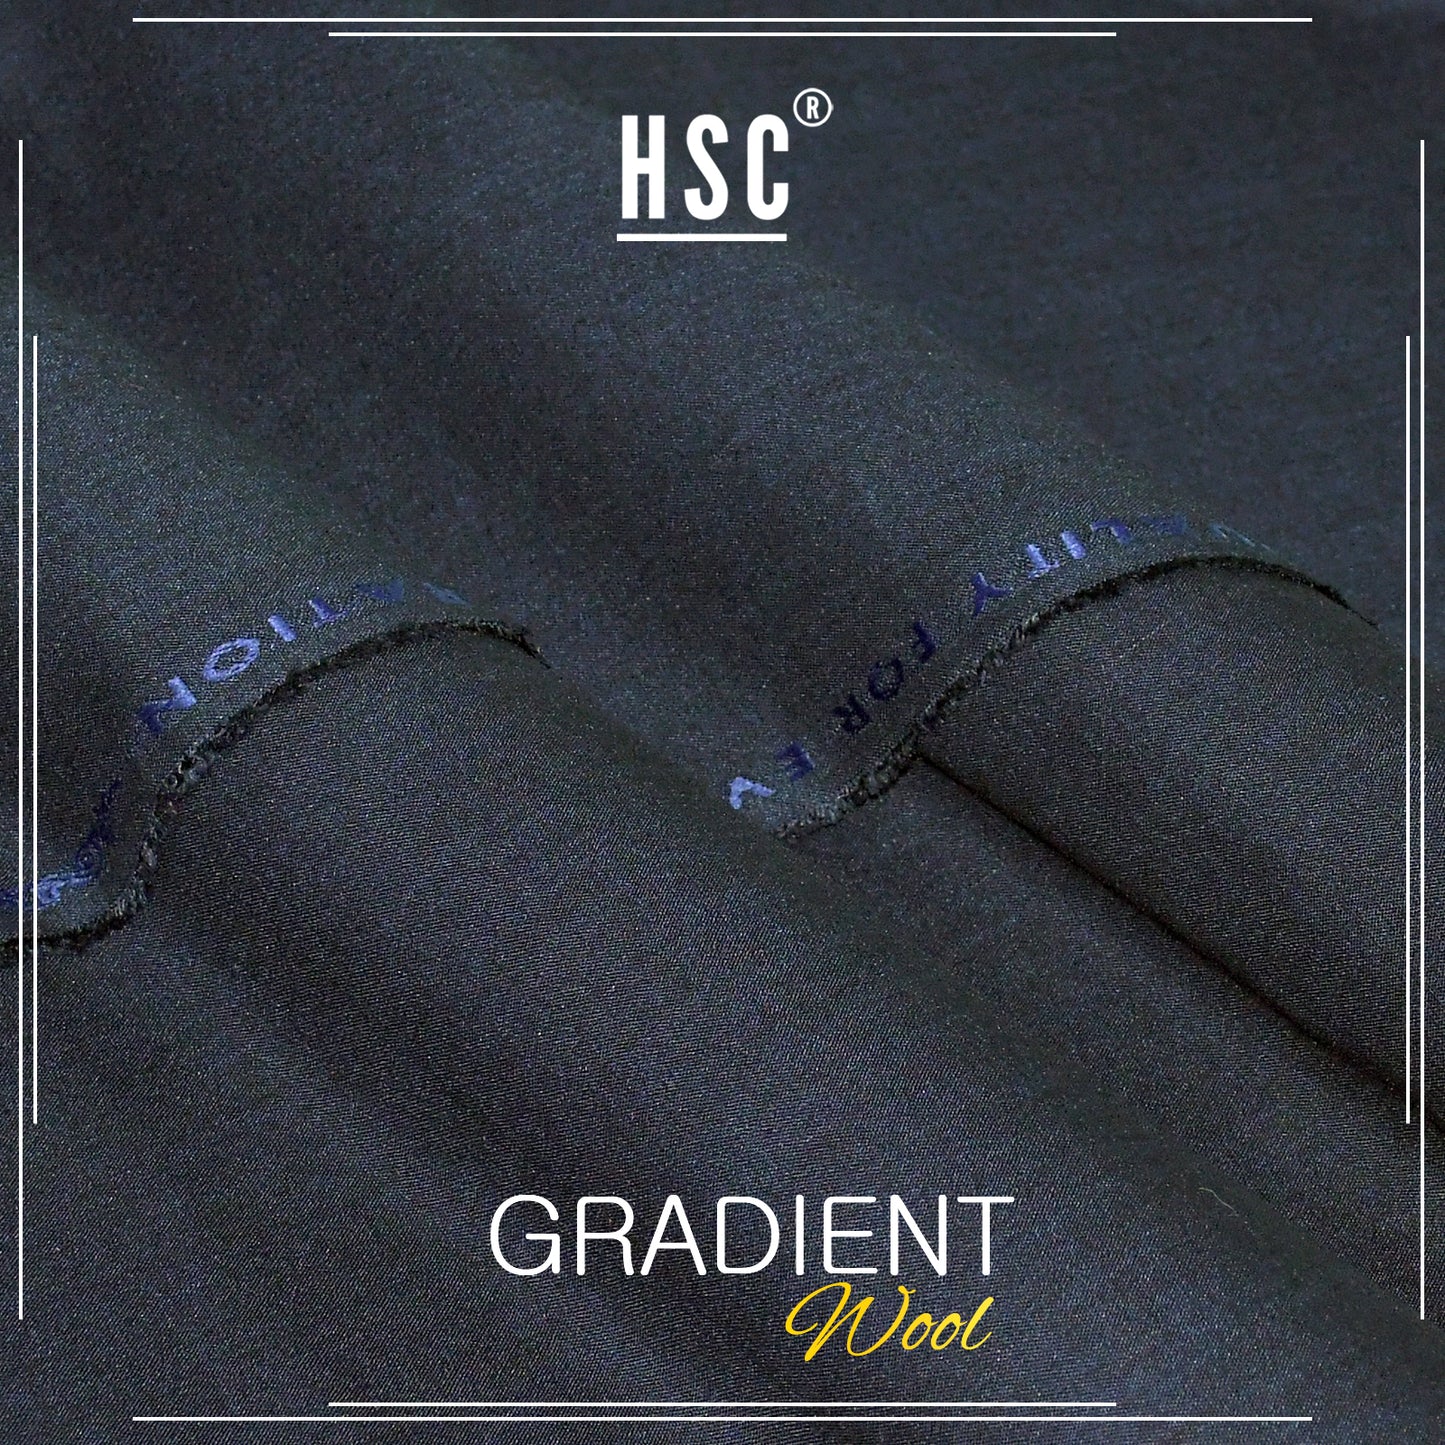 Buy1 Get 1 Free Gradient Wool For Men - GW2 HSC